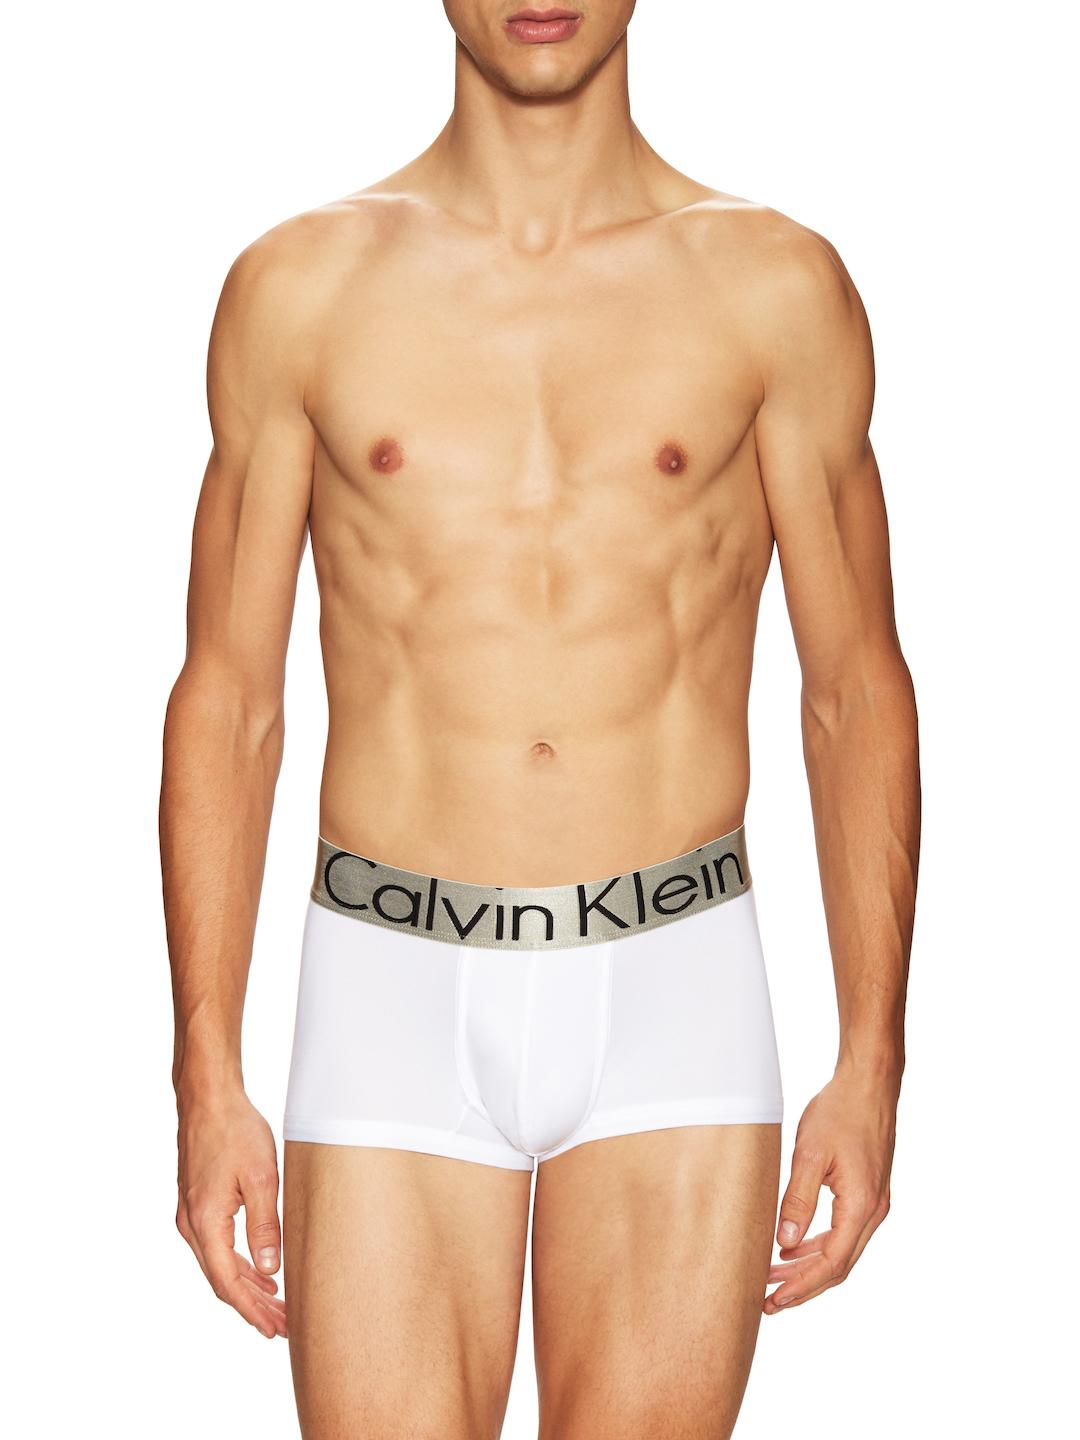 Calvin Klein Trunk Underwear - White